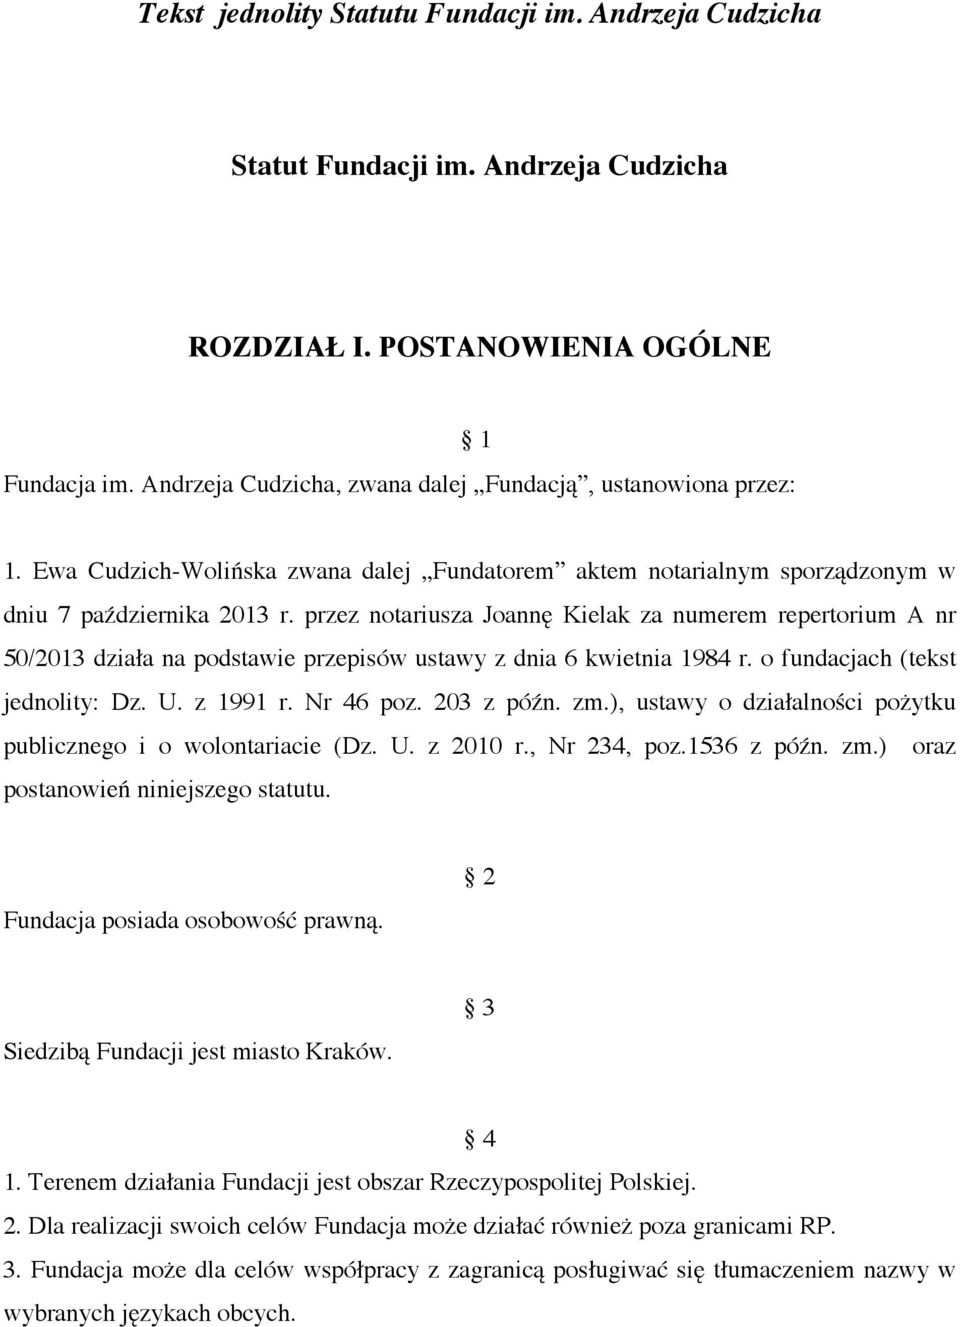 przez notariusza Joannę Kielak za numerem repertorium A nr 50/2013 działa na podstawie przepisów ustawy z dnia 6 kwietnia 1984 r. o fundacjach (tekst jednolity: Dz. U. z 1991 r. Nr 46 poz. 203 z późn.